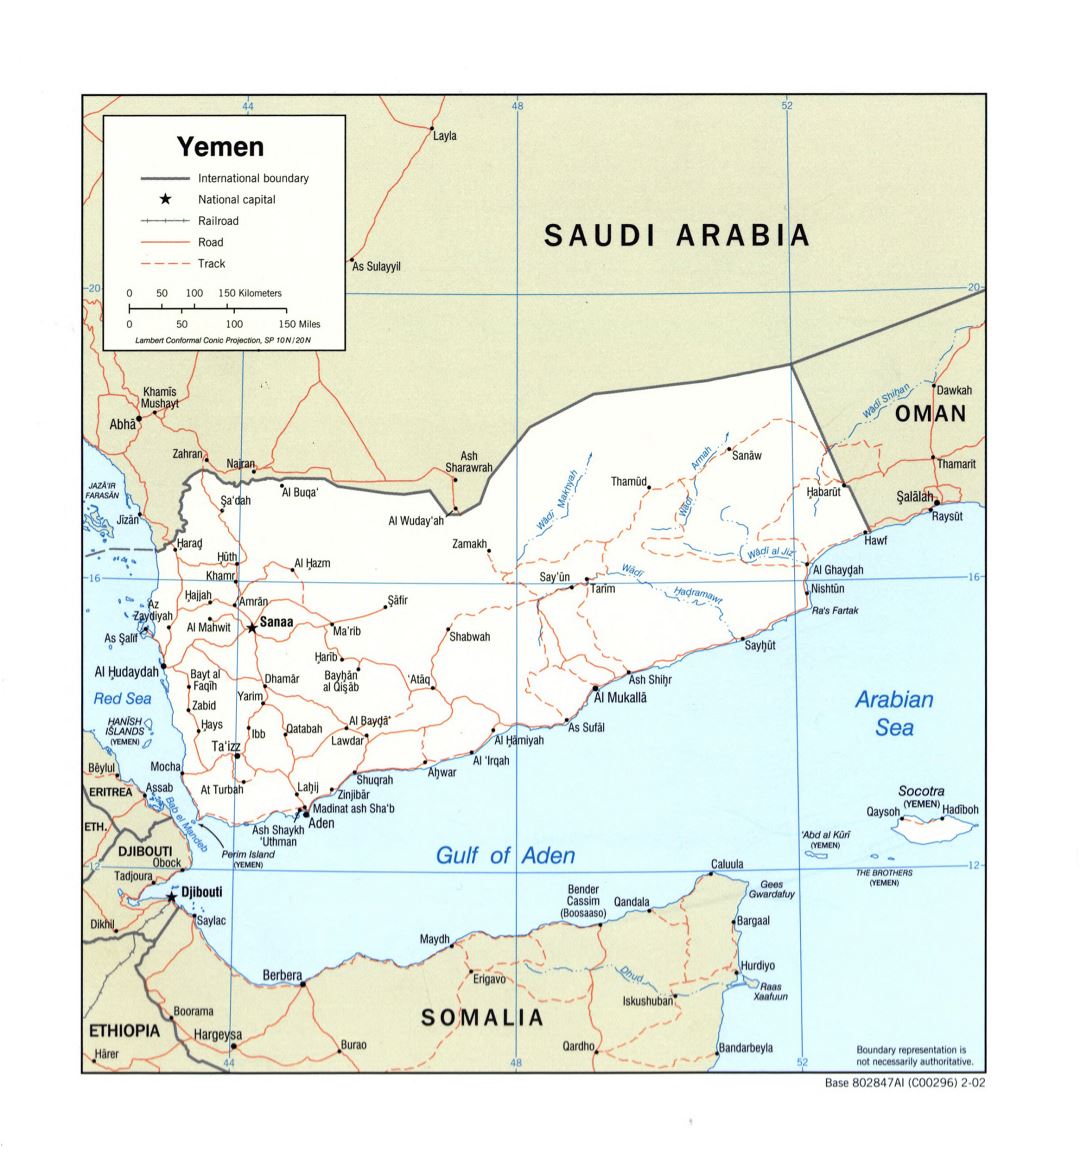 Grande detallado mapa político de Yemen con carreteras, ferrocarriles y principales ciudades - 2002